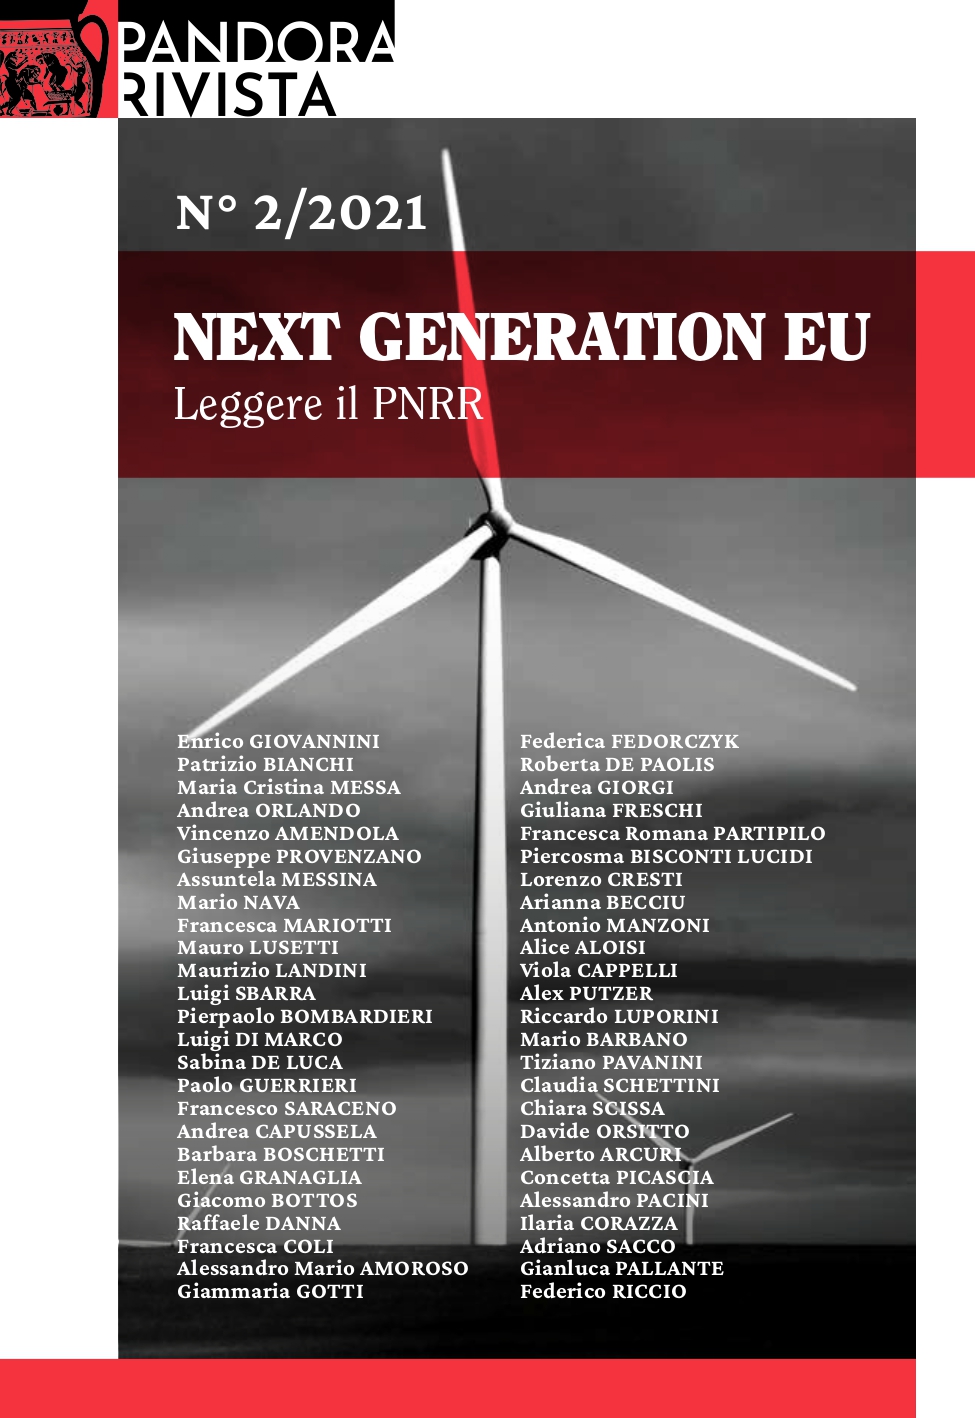 Numero 2/2021 - Next Generation EU Leggere il PNRR